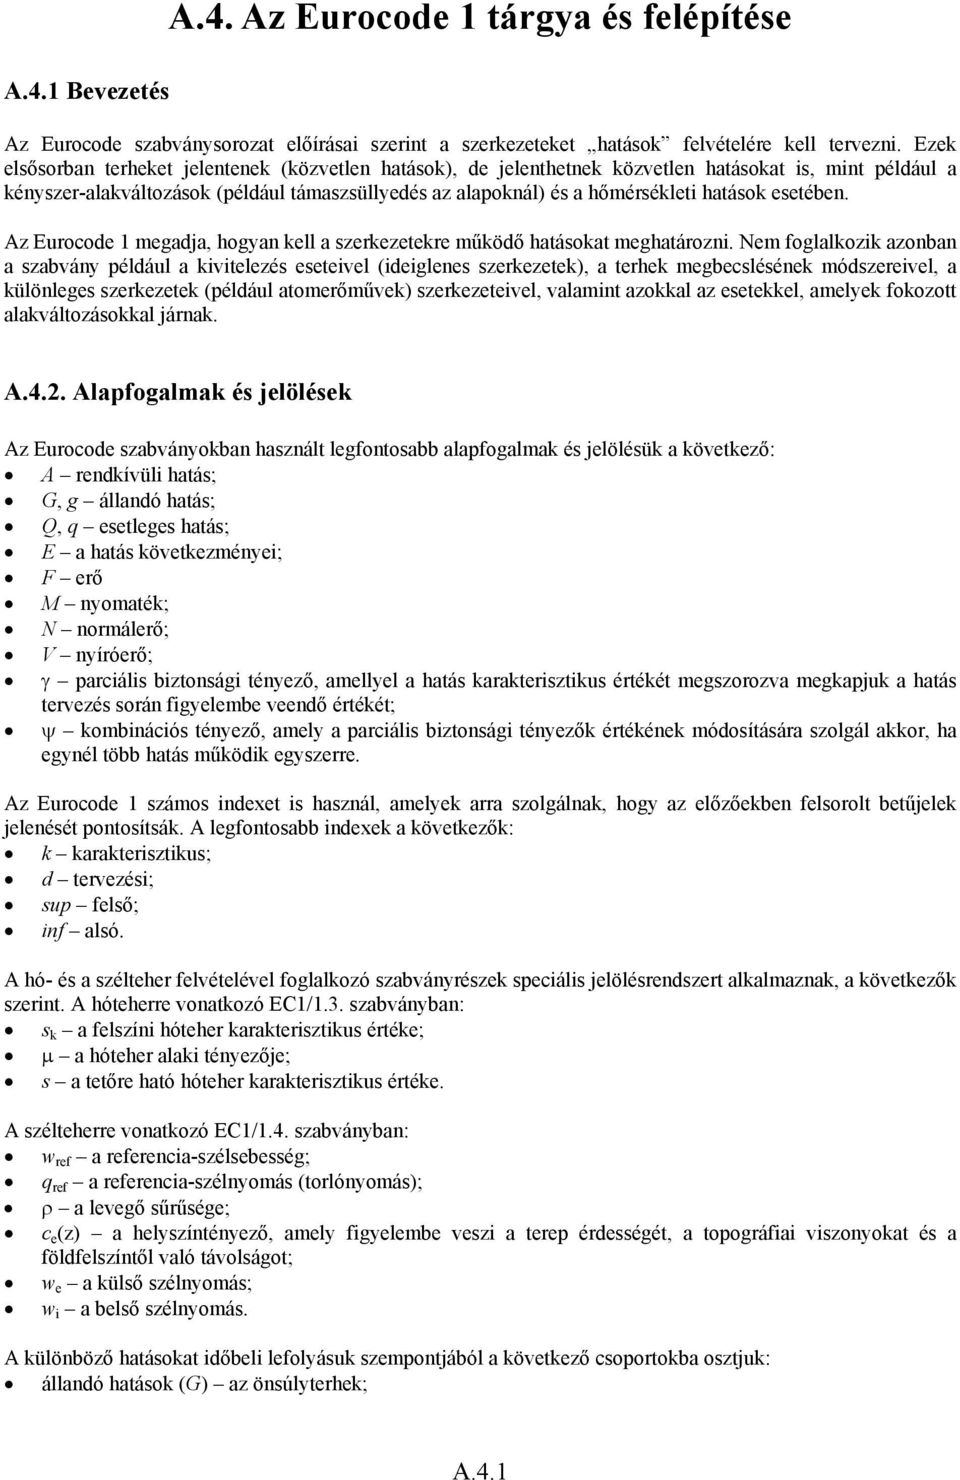 A.4. Az Eurocode 1 tárgya és felépítése - PDF Ingyenes letöltés